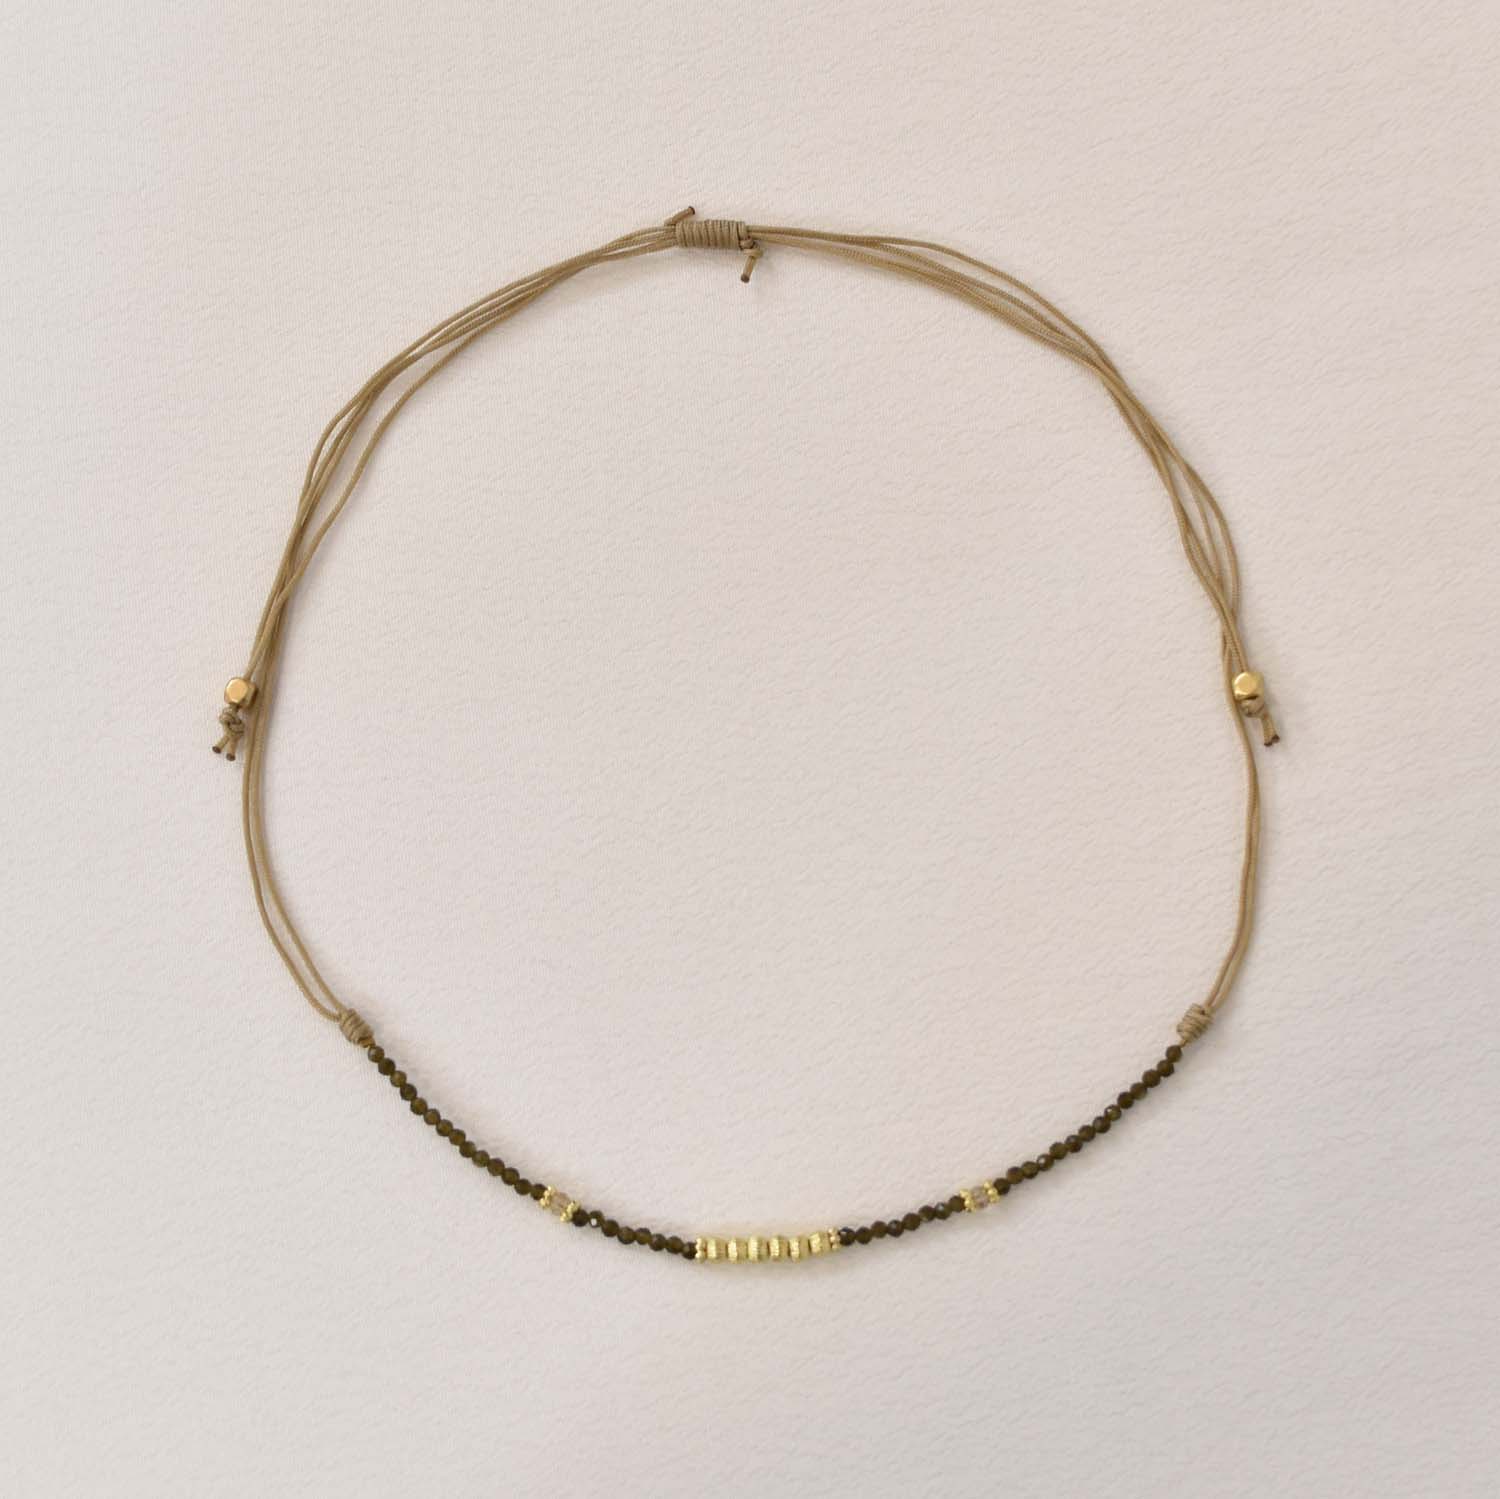 Kaki short beads necklace